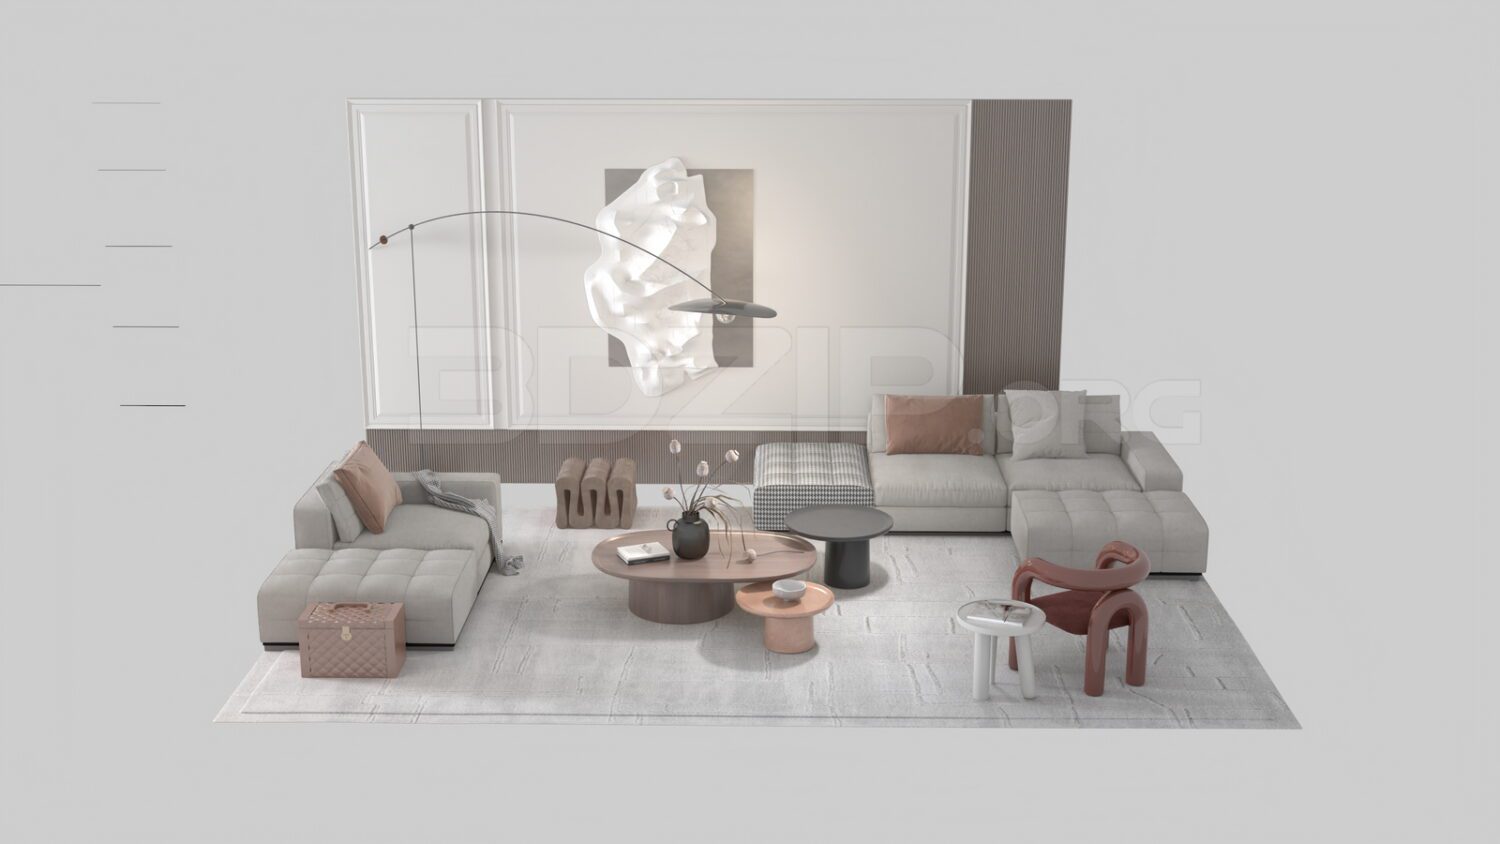 3427. Free 3D Sofa Model Download